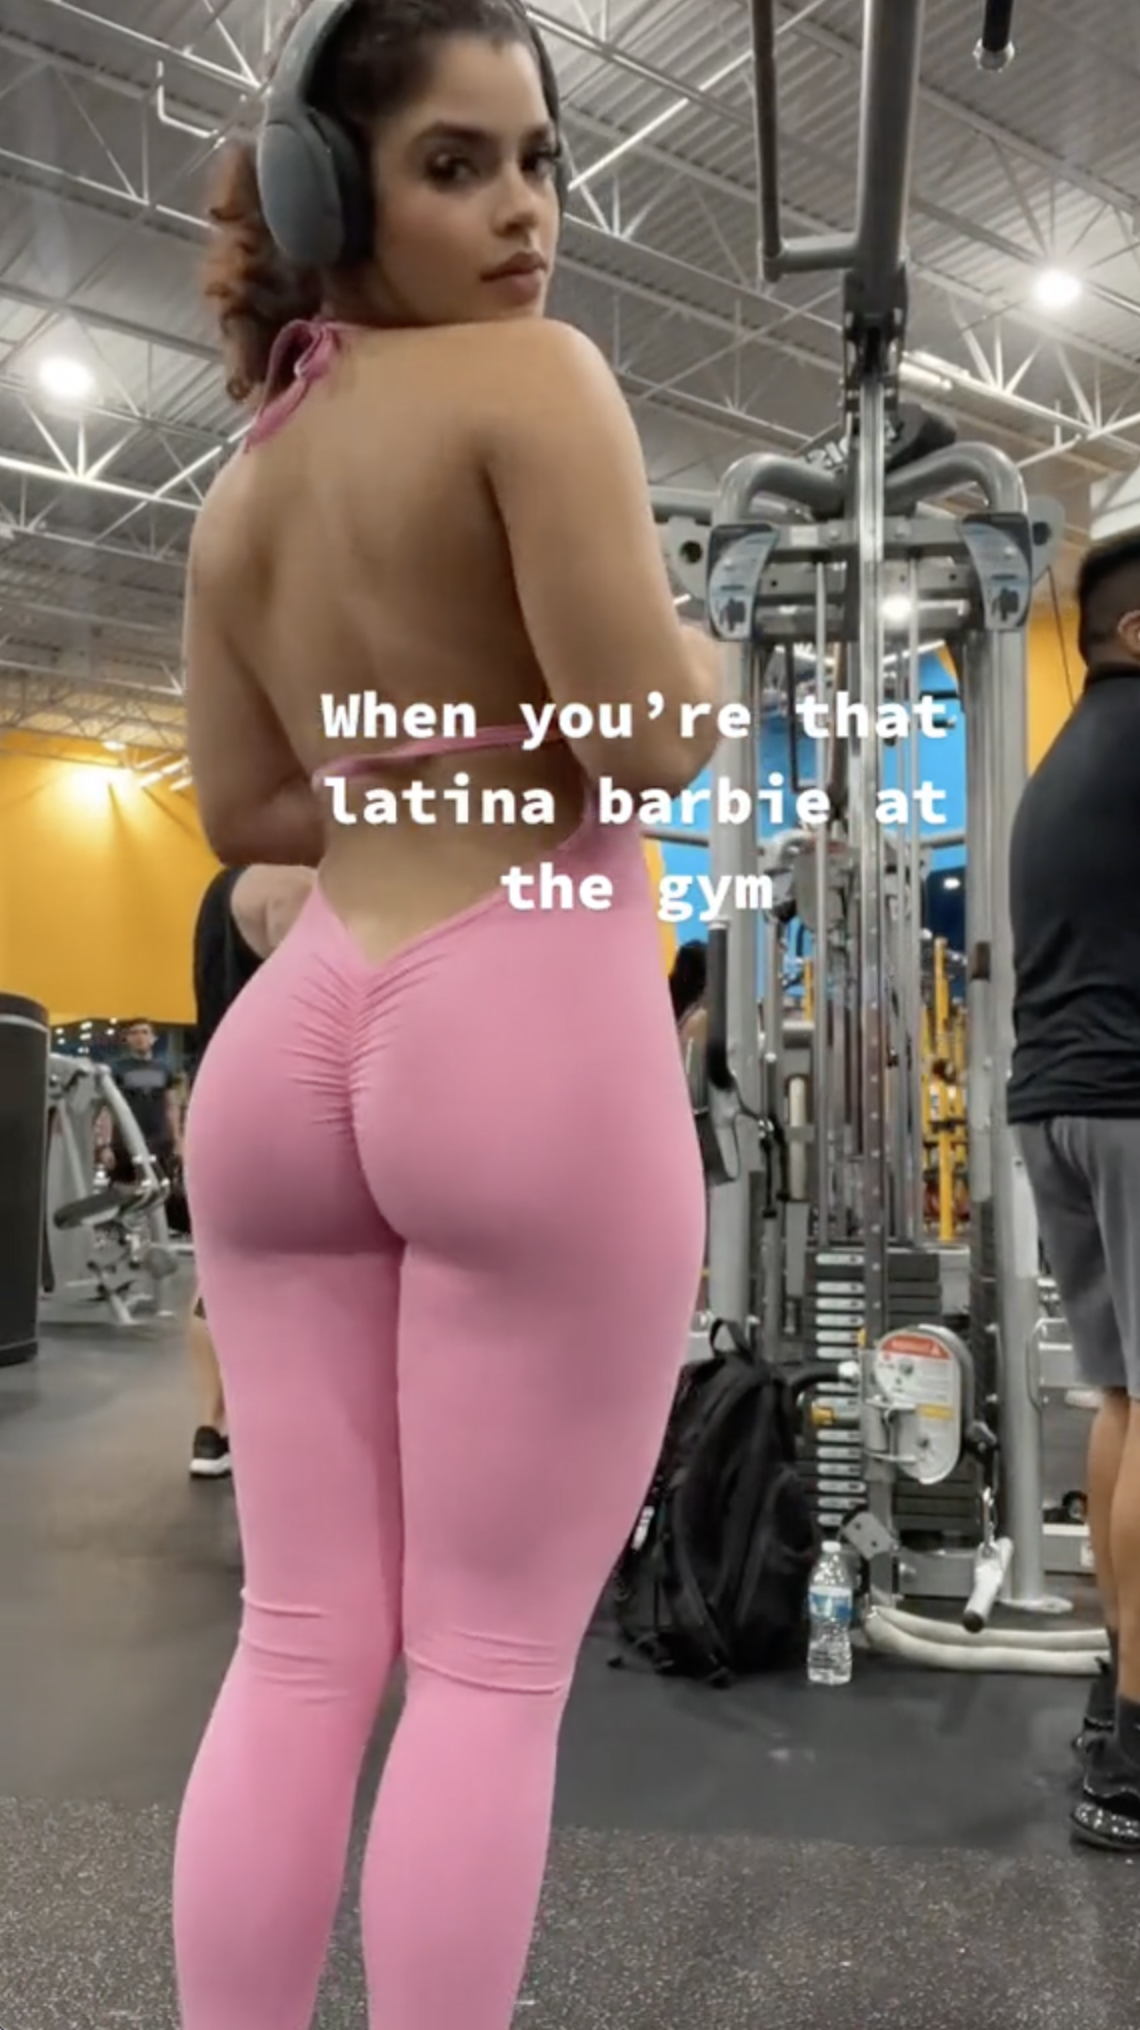 cindy jarratt share latina ass pics photos